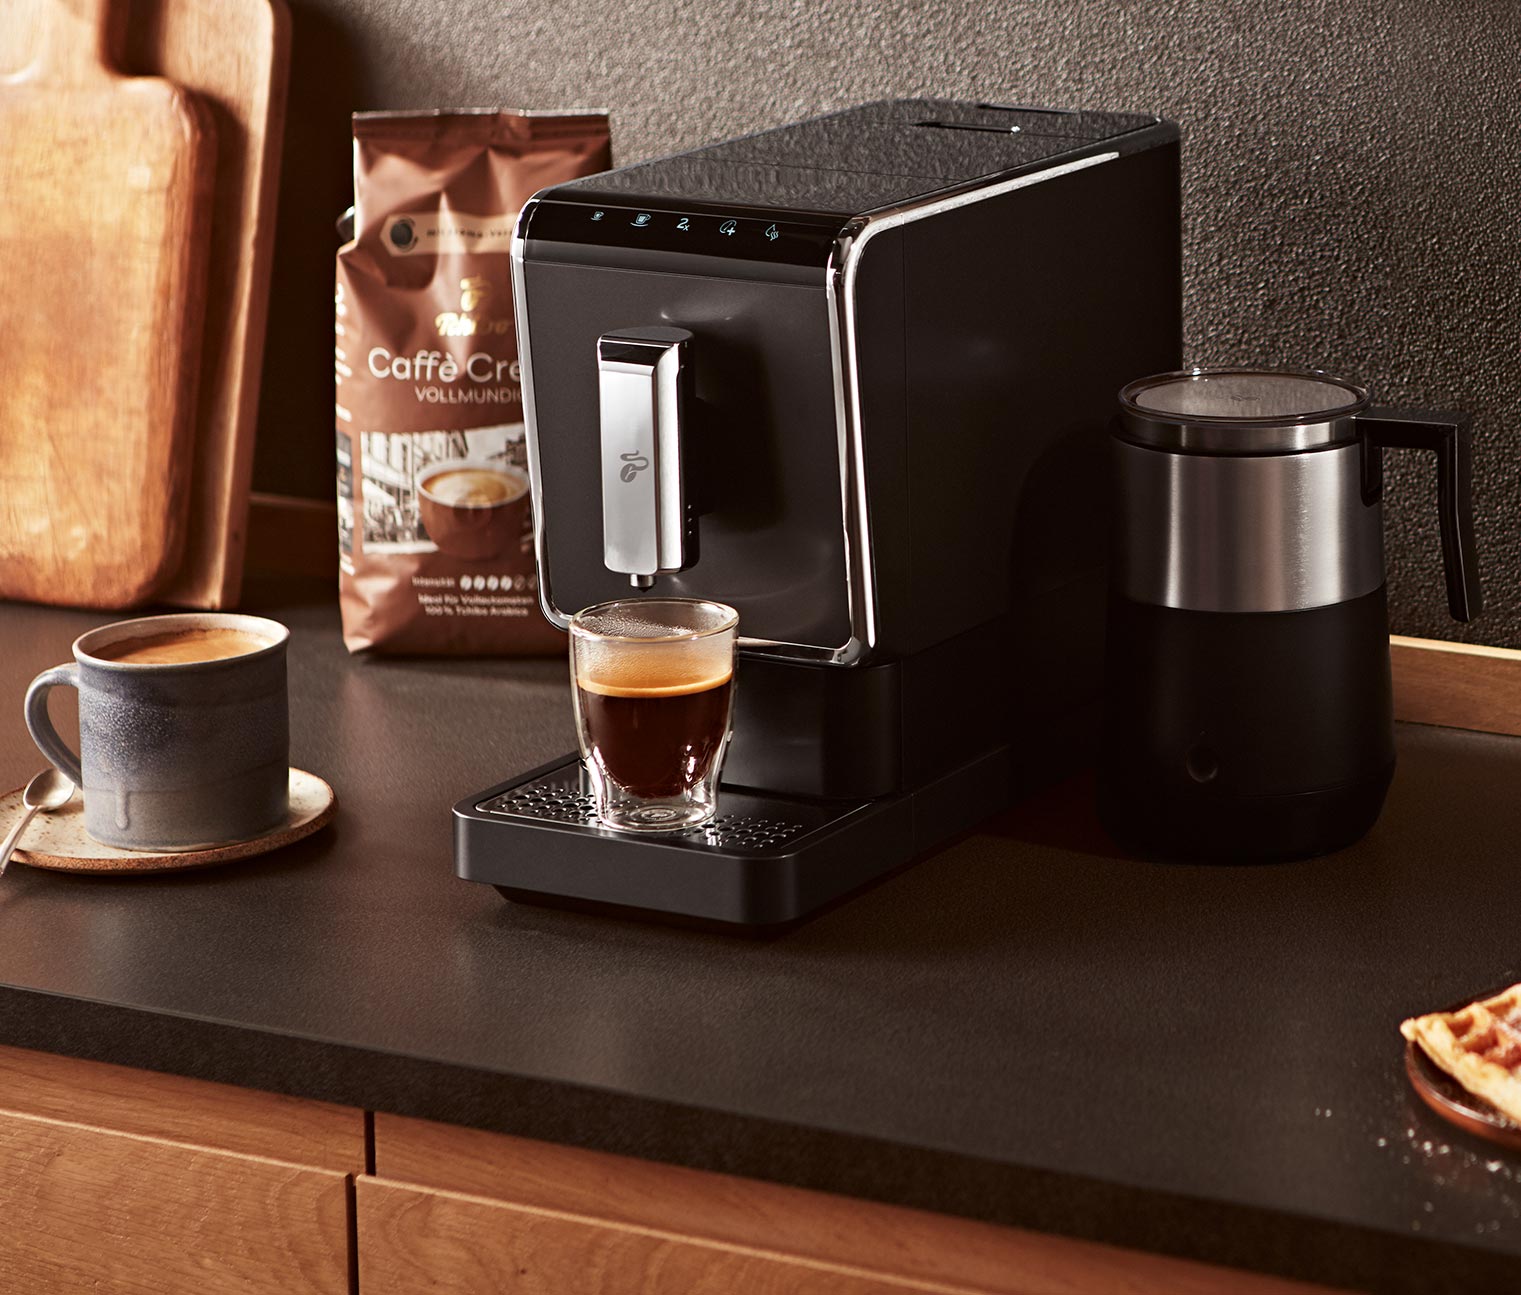 Plnoautomatický kávovar Esperto Caffè + 1 kg kávy Barista pre držiteľov  TchiboCard* 392080 z e-shopu Tchibo.sk